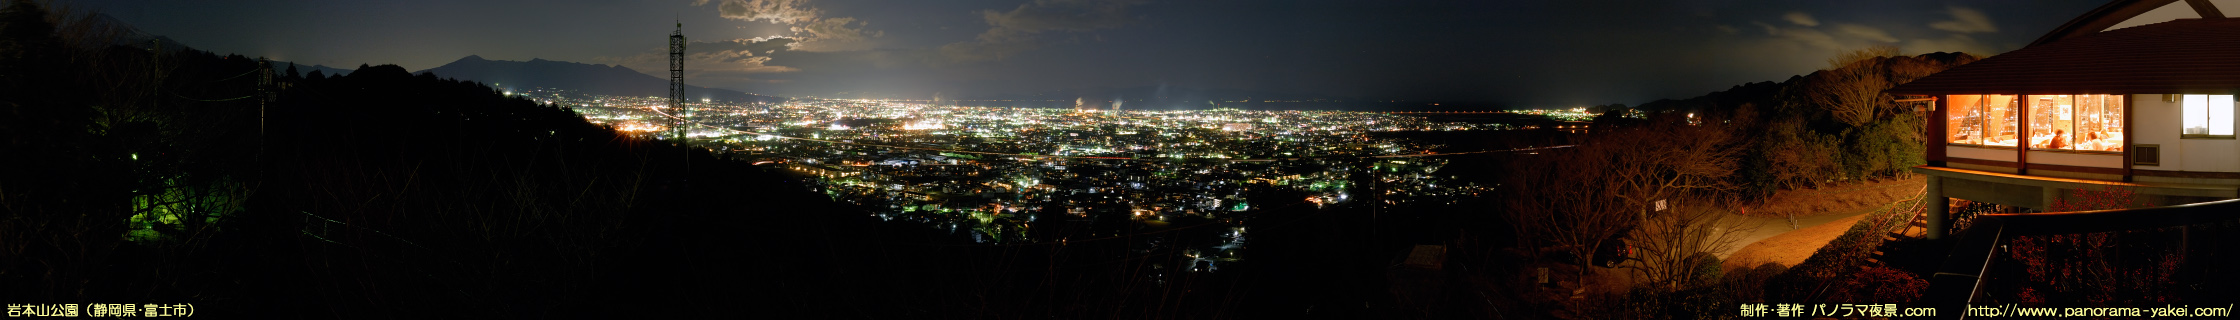 岩本山公園 張出しデッキからのパノラマ夜景写真